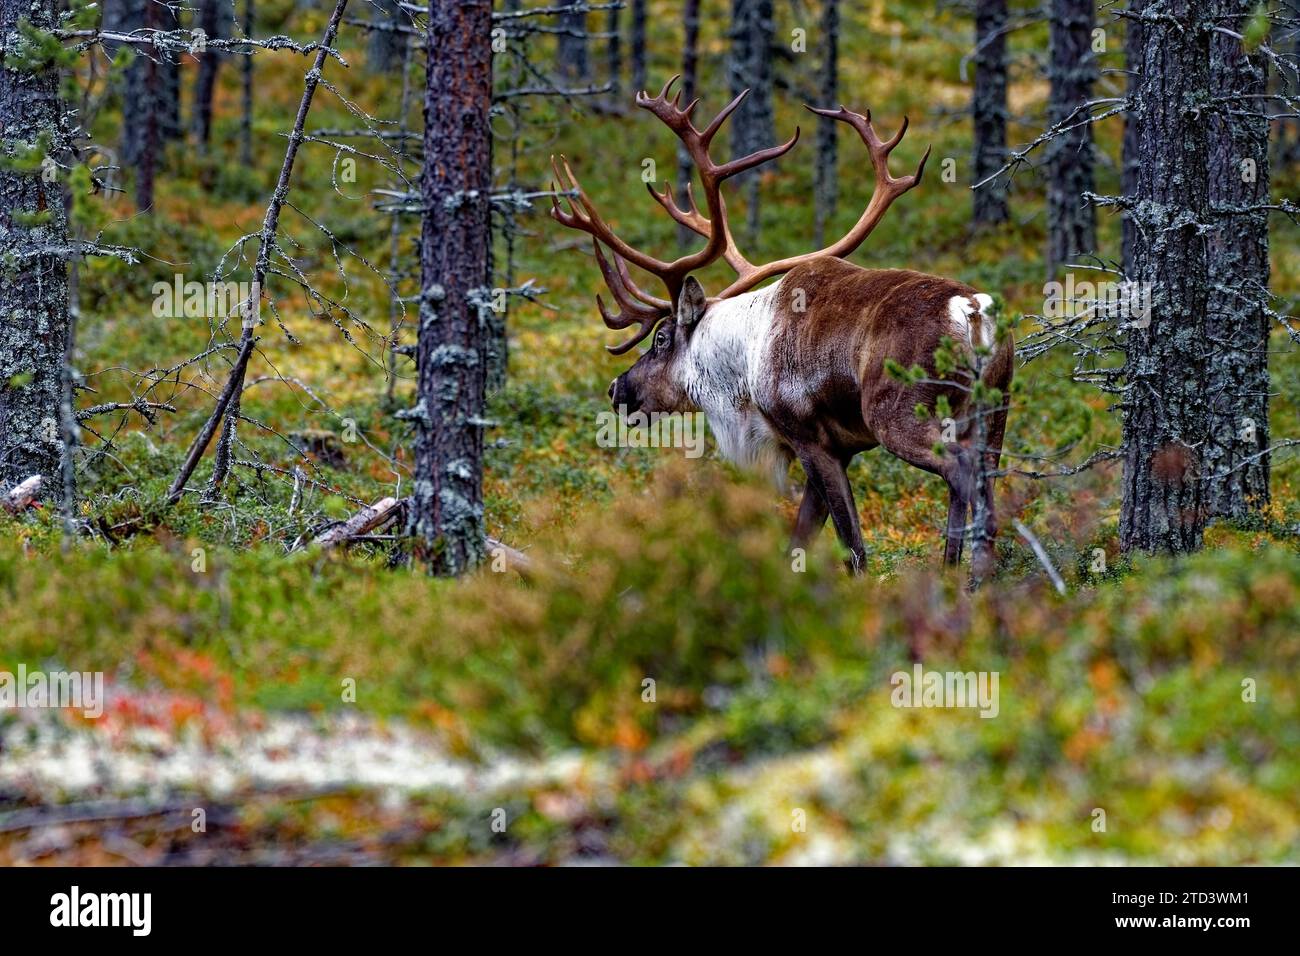 Rennes forestiers finlandais (Rangifer tarandus fennicus), sauvages, dans la forêt, Kuhmo, Kainuu, nord-est de la Finlande, Finlande Banque D'Images